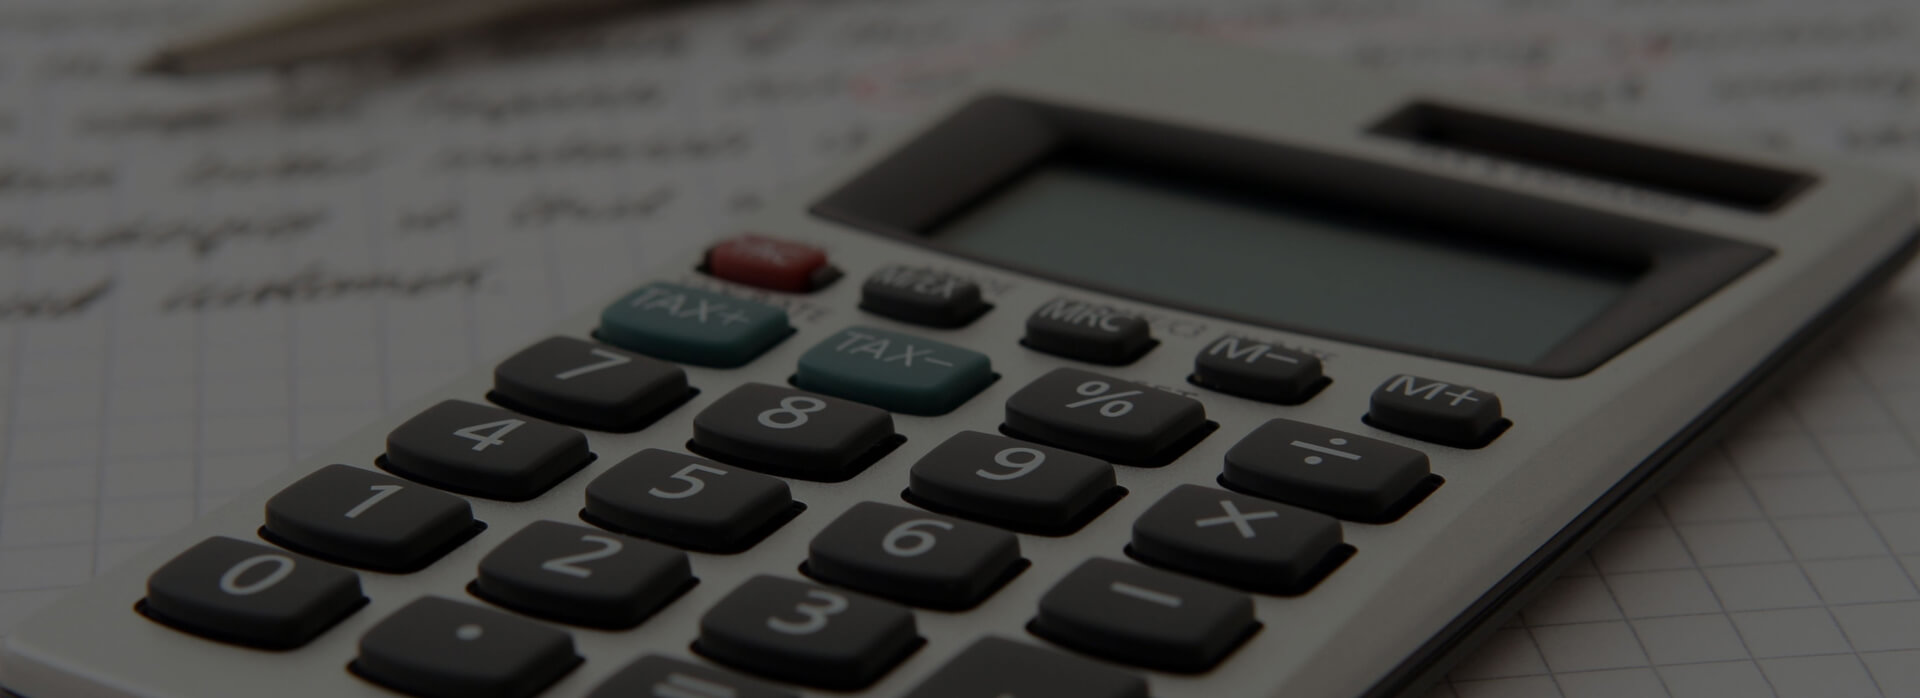 Quebec Tax Refund Calculator